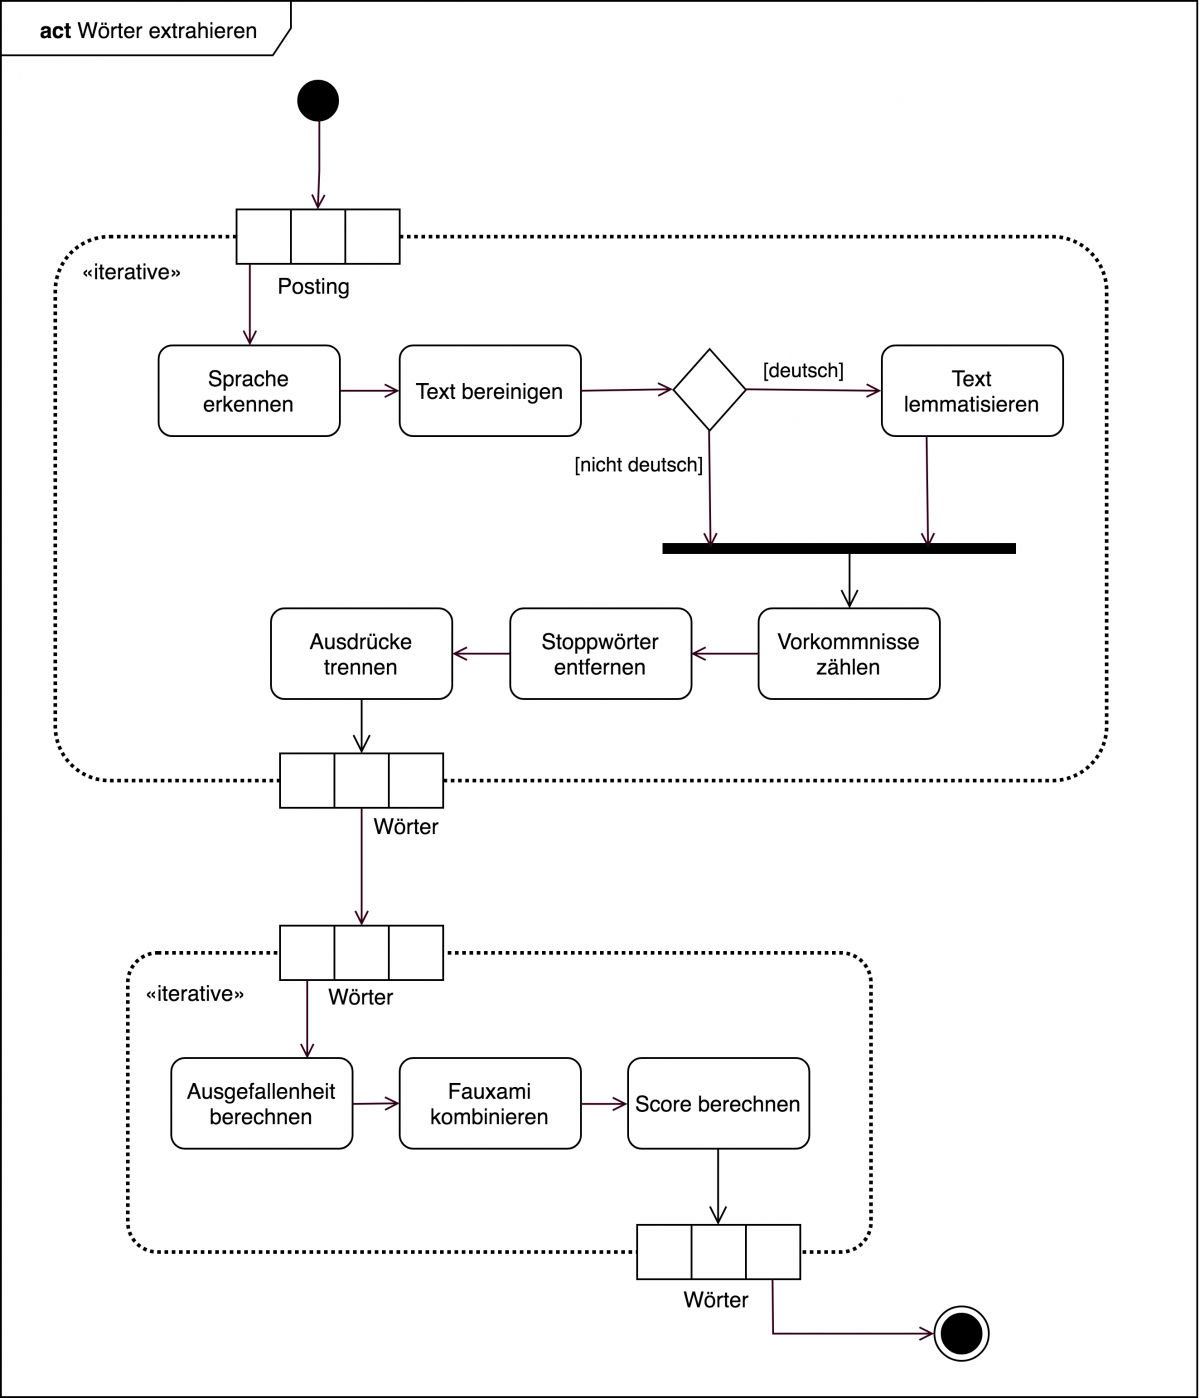 UML-Aktivitätsdiagramm über den Prozess der Wortextraktion